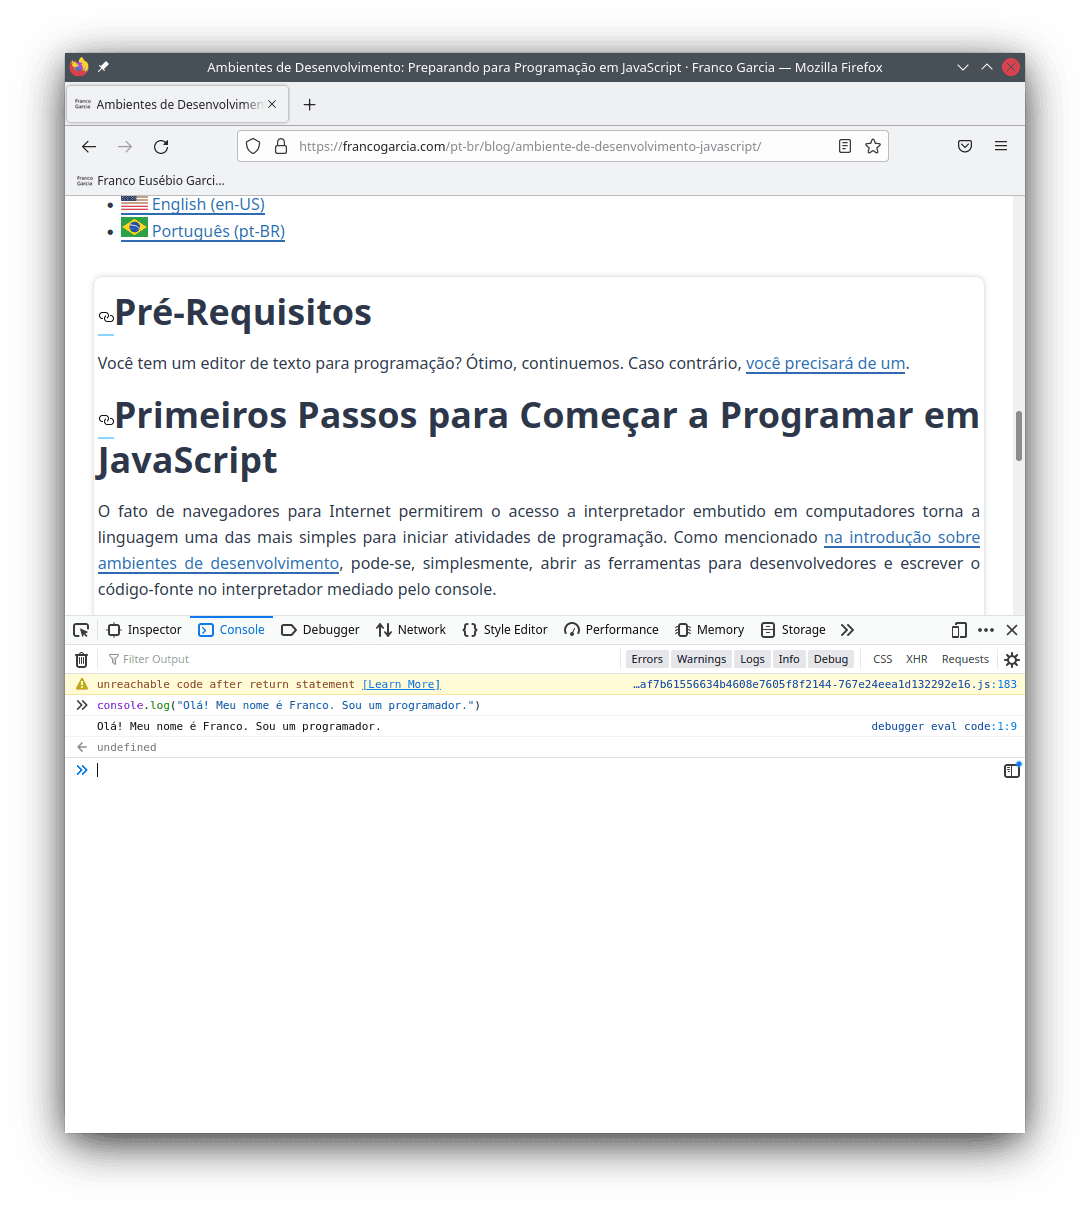 Exemplo de uso do interpretador JavaScript integrado do Firefox. O uso de `console.log()` escreve uma mensagem textual no console. No caso, ao usar `console.log("Olá! Meu nome é Franco. Sou um programador.")`, a saída será: "Olá! Meu nome é Franco. Sou um programador."